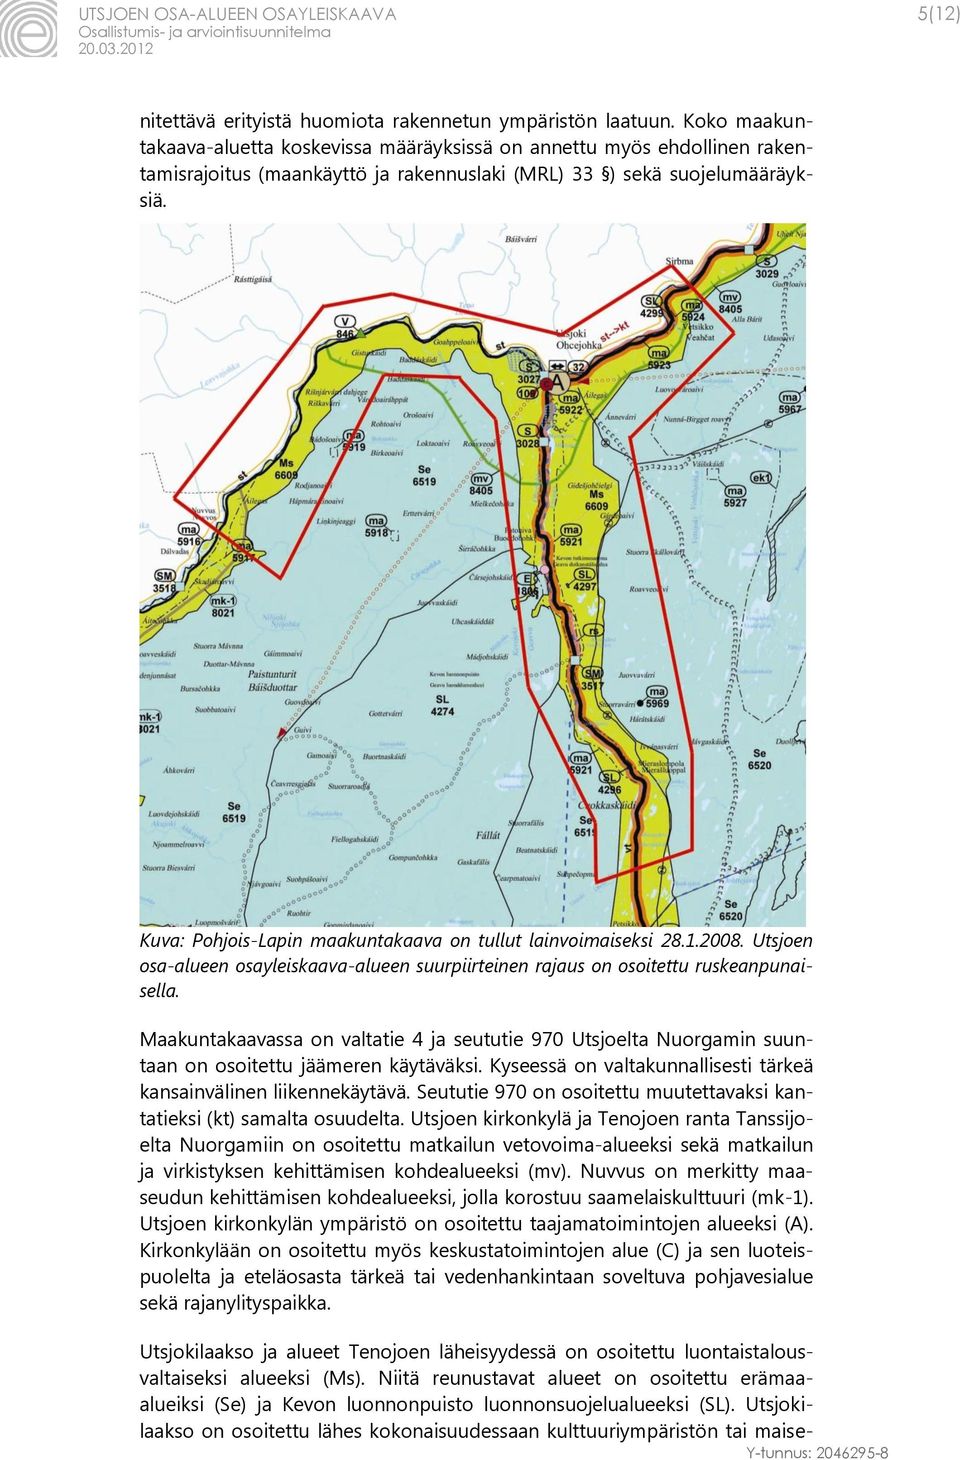 Kuva: Pohjois-Lapin maakuntakaava on tullut lainvoimaiseksi 28.1.2008. Utsjoen osa-alueen osayleiskaava-alueen suurpiirteinen rajaus on osoitettu ruskeanpunaisella.